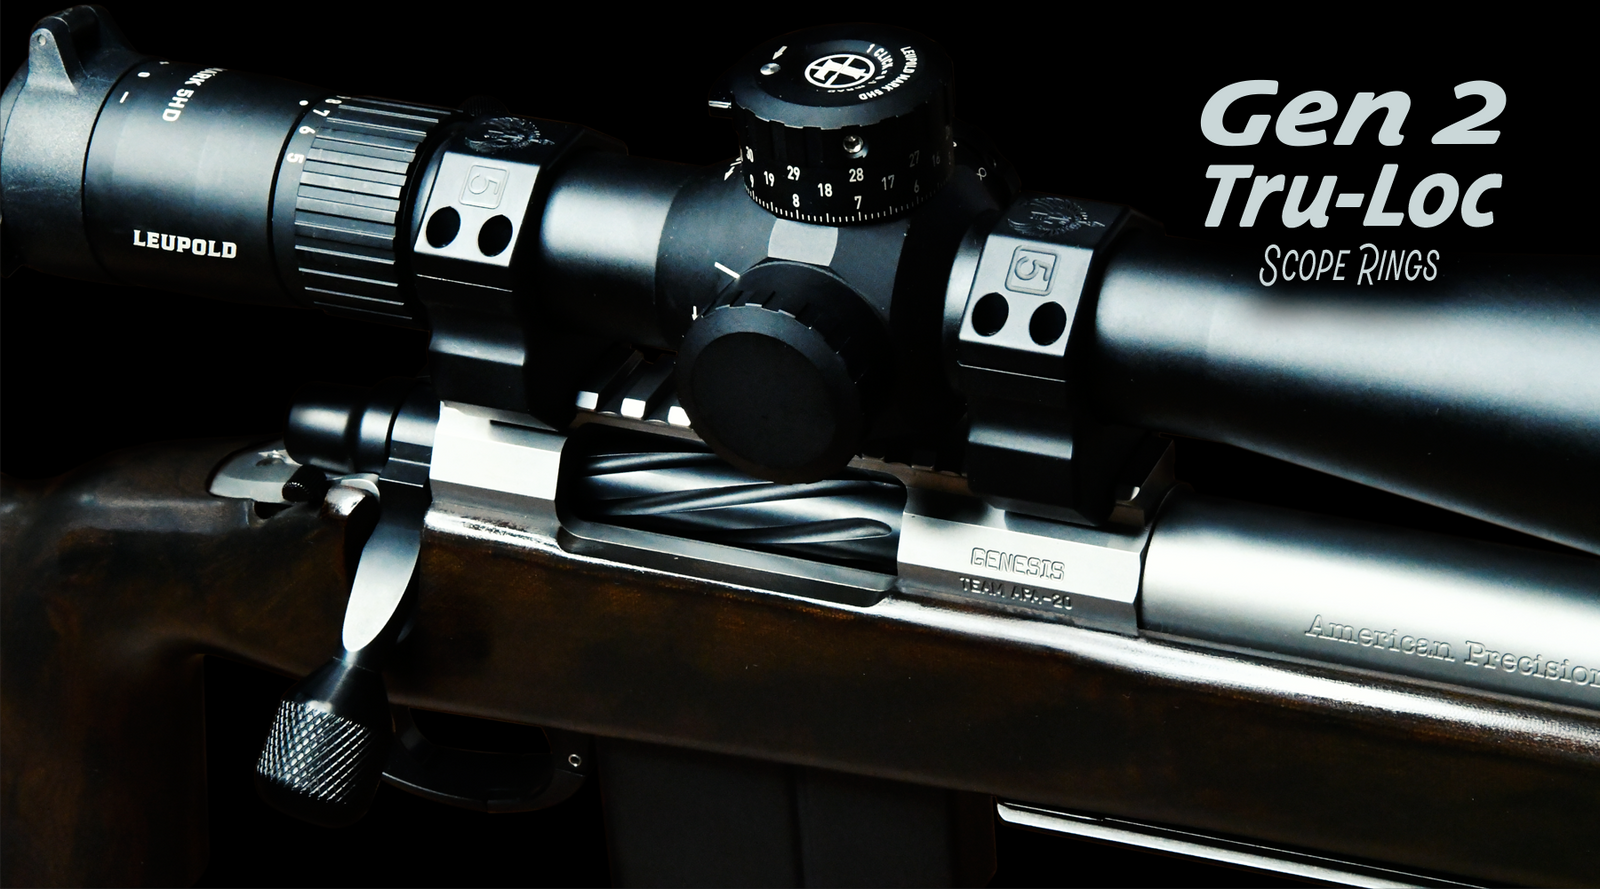 RDSC] Shop Precision Rifle Muzzle Devices